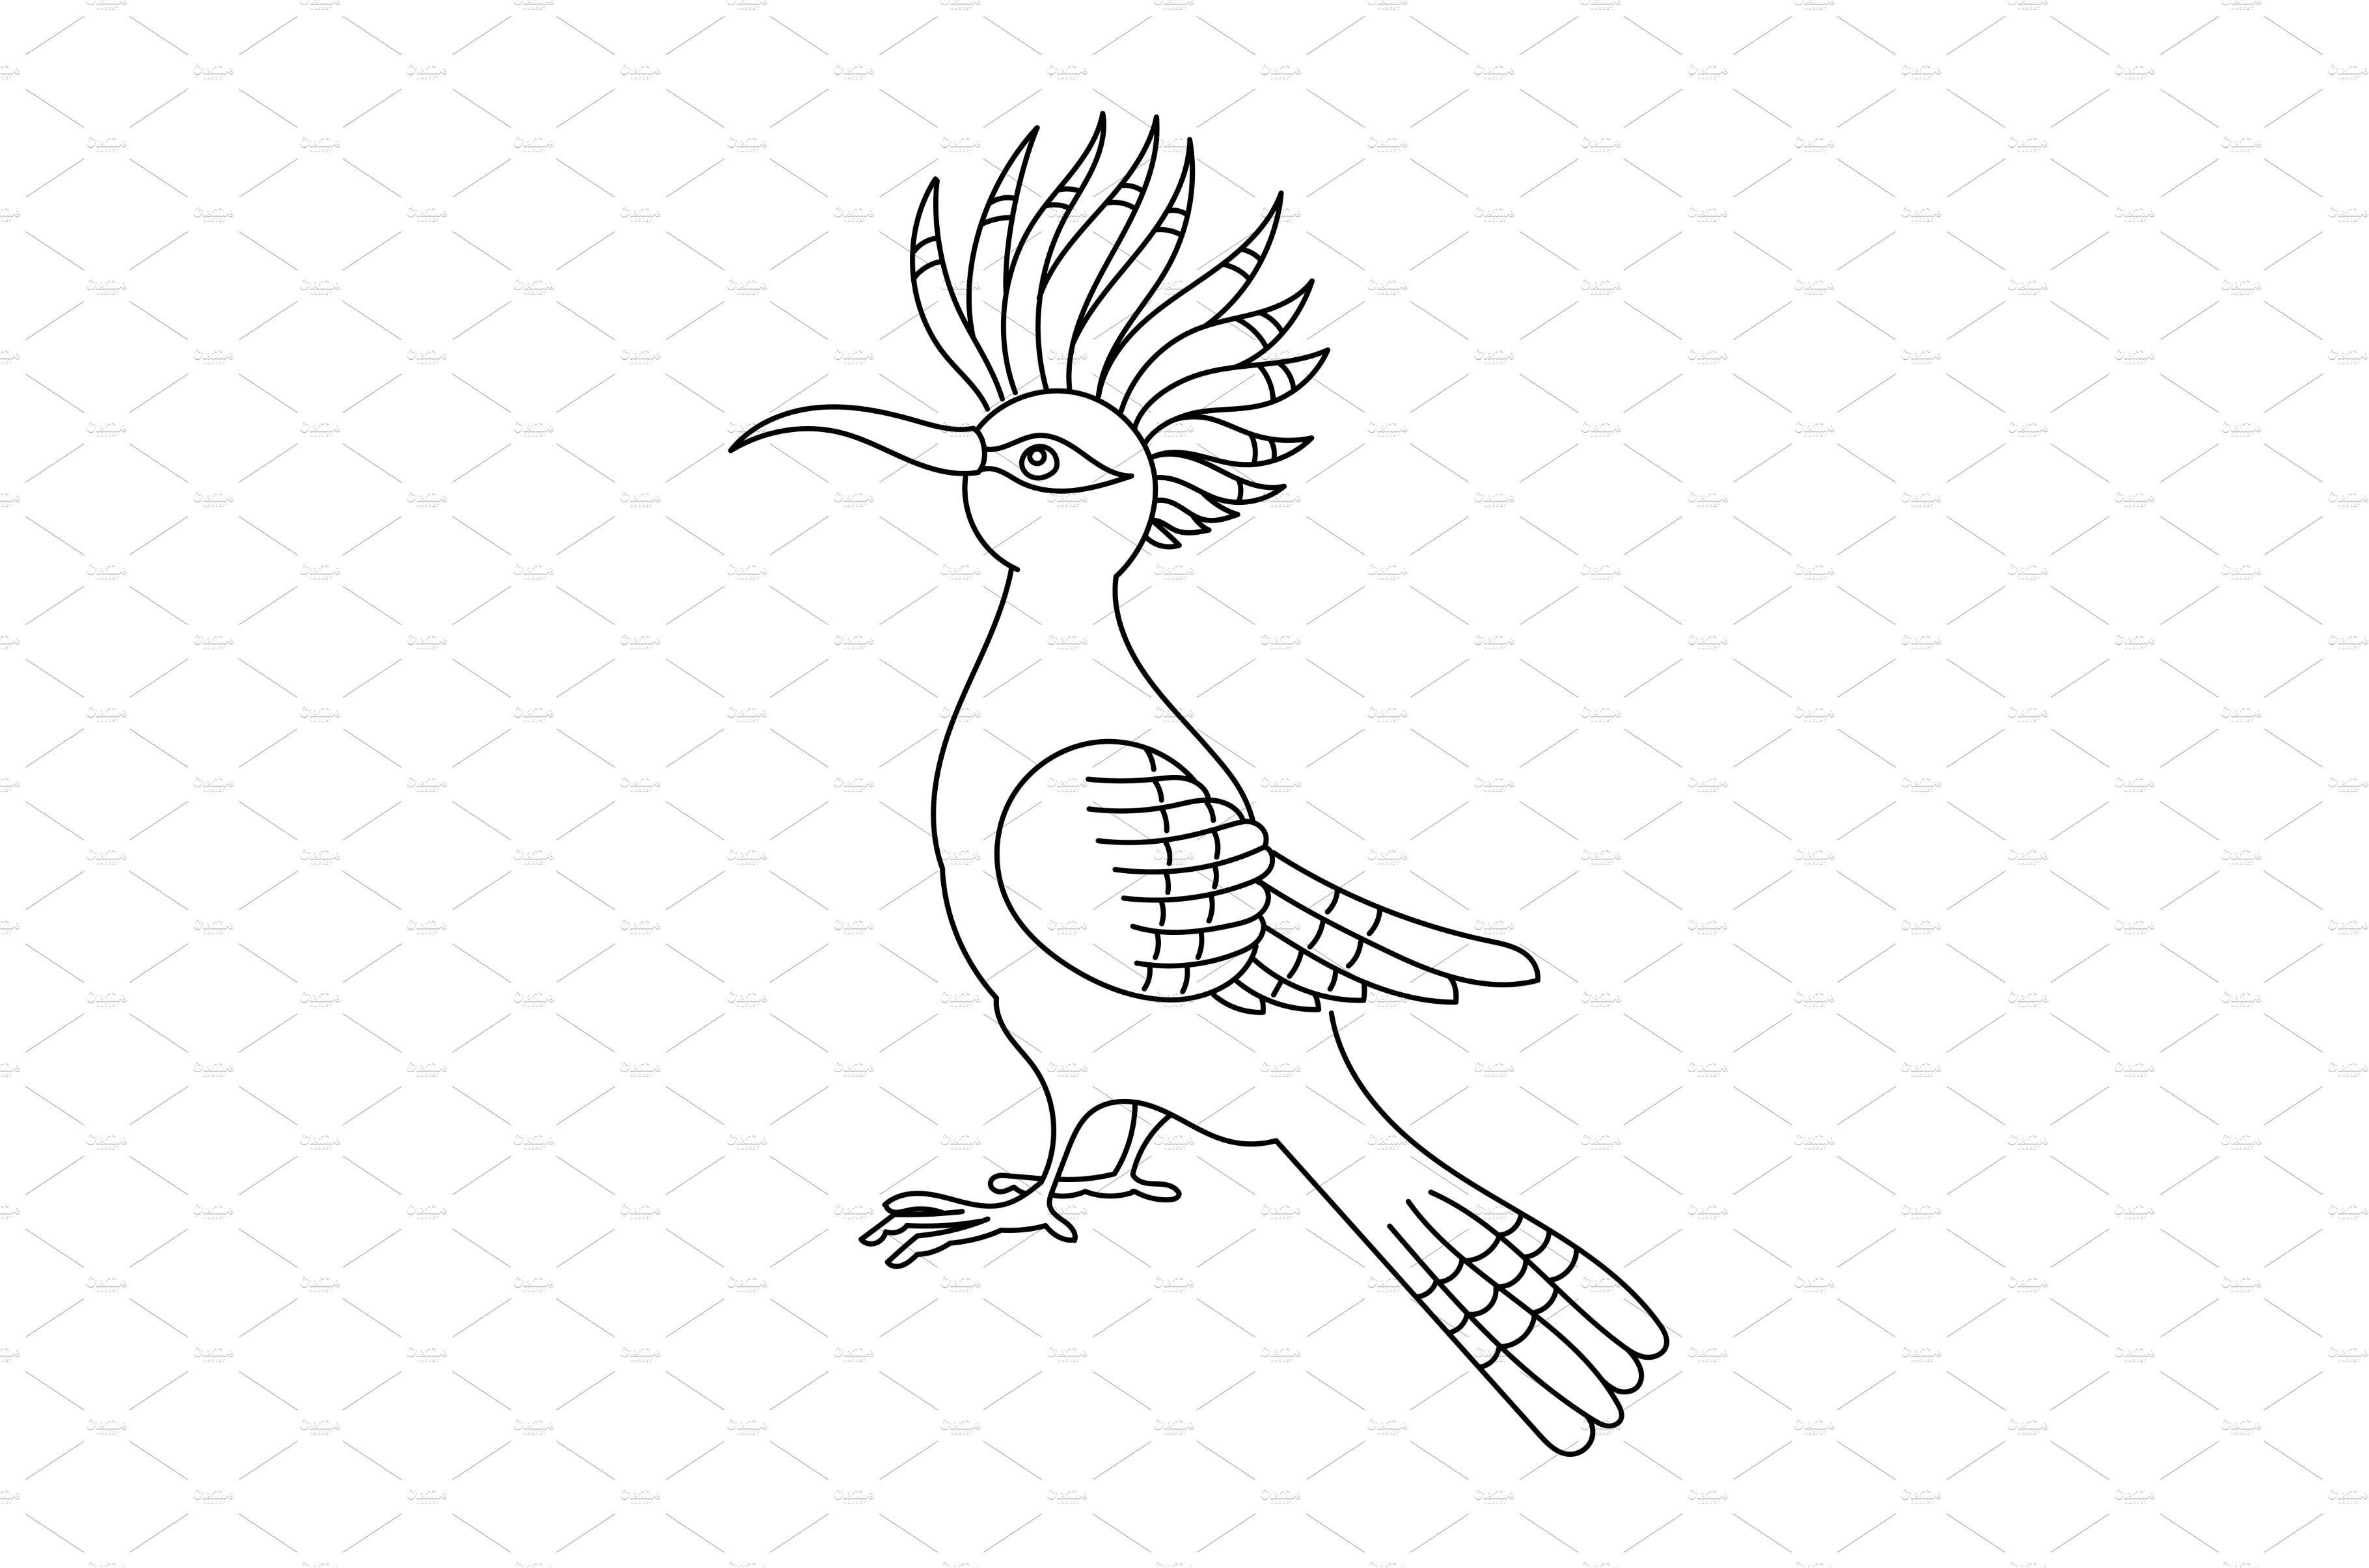 Hoopoe bird. Editable outline stroke cover image.